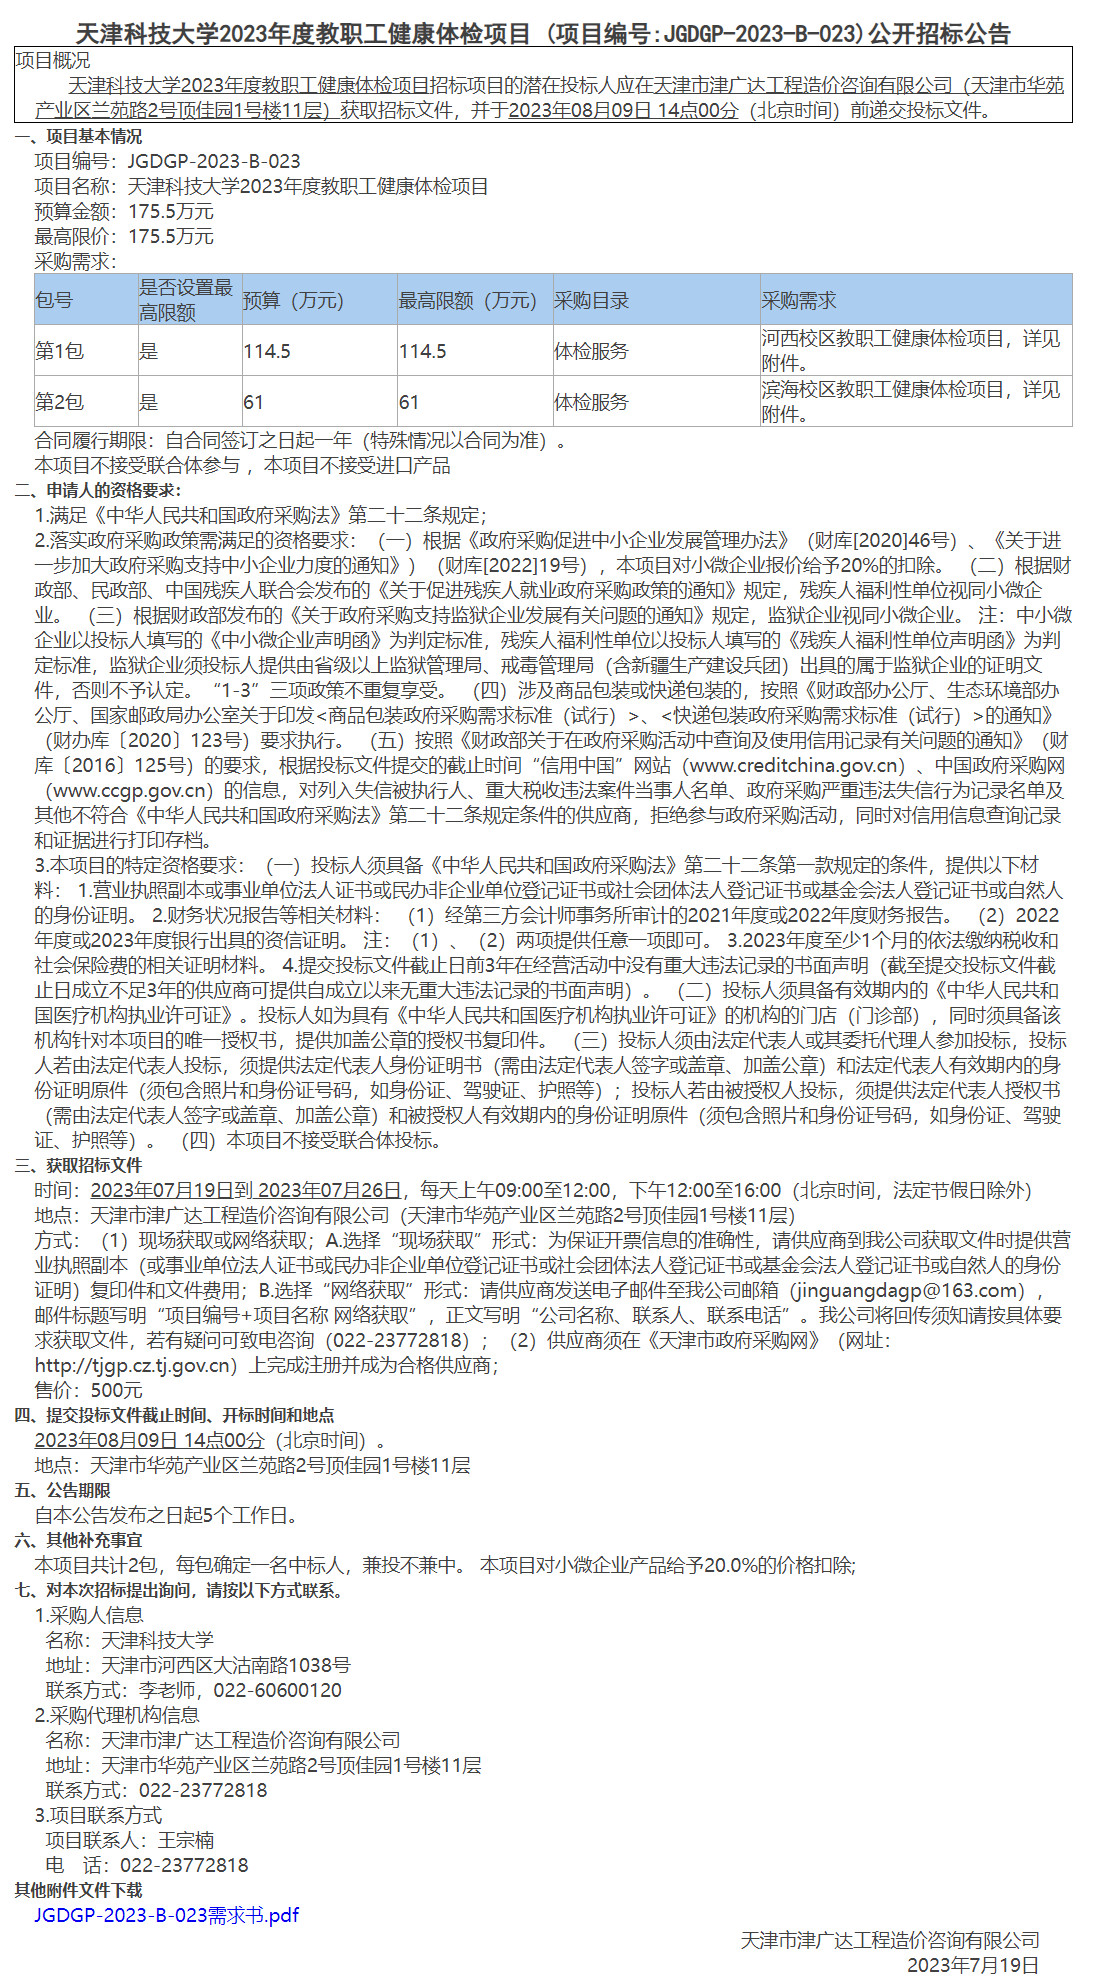 天津科技大学2023年度教职工健康体检项目(图1)